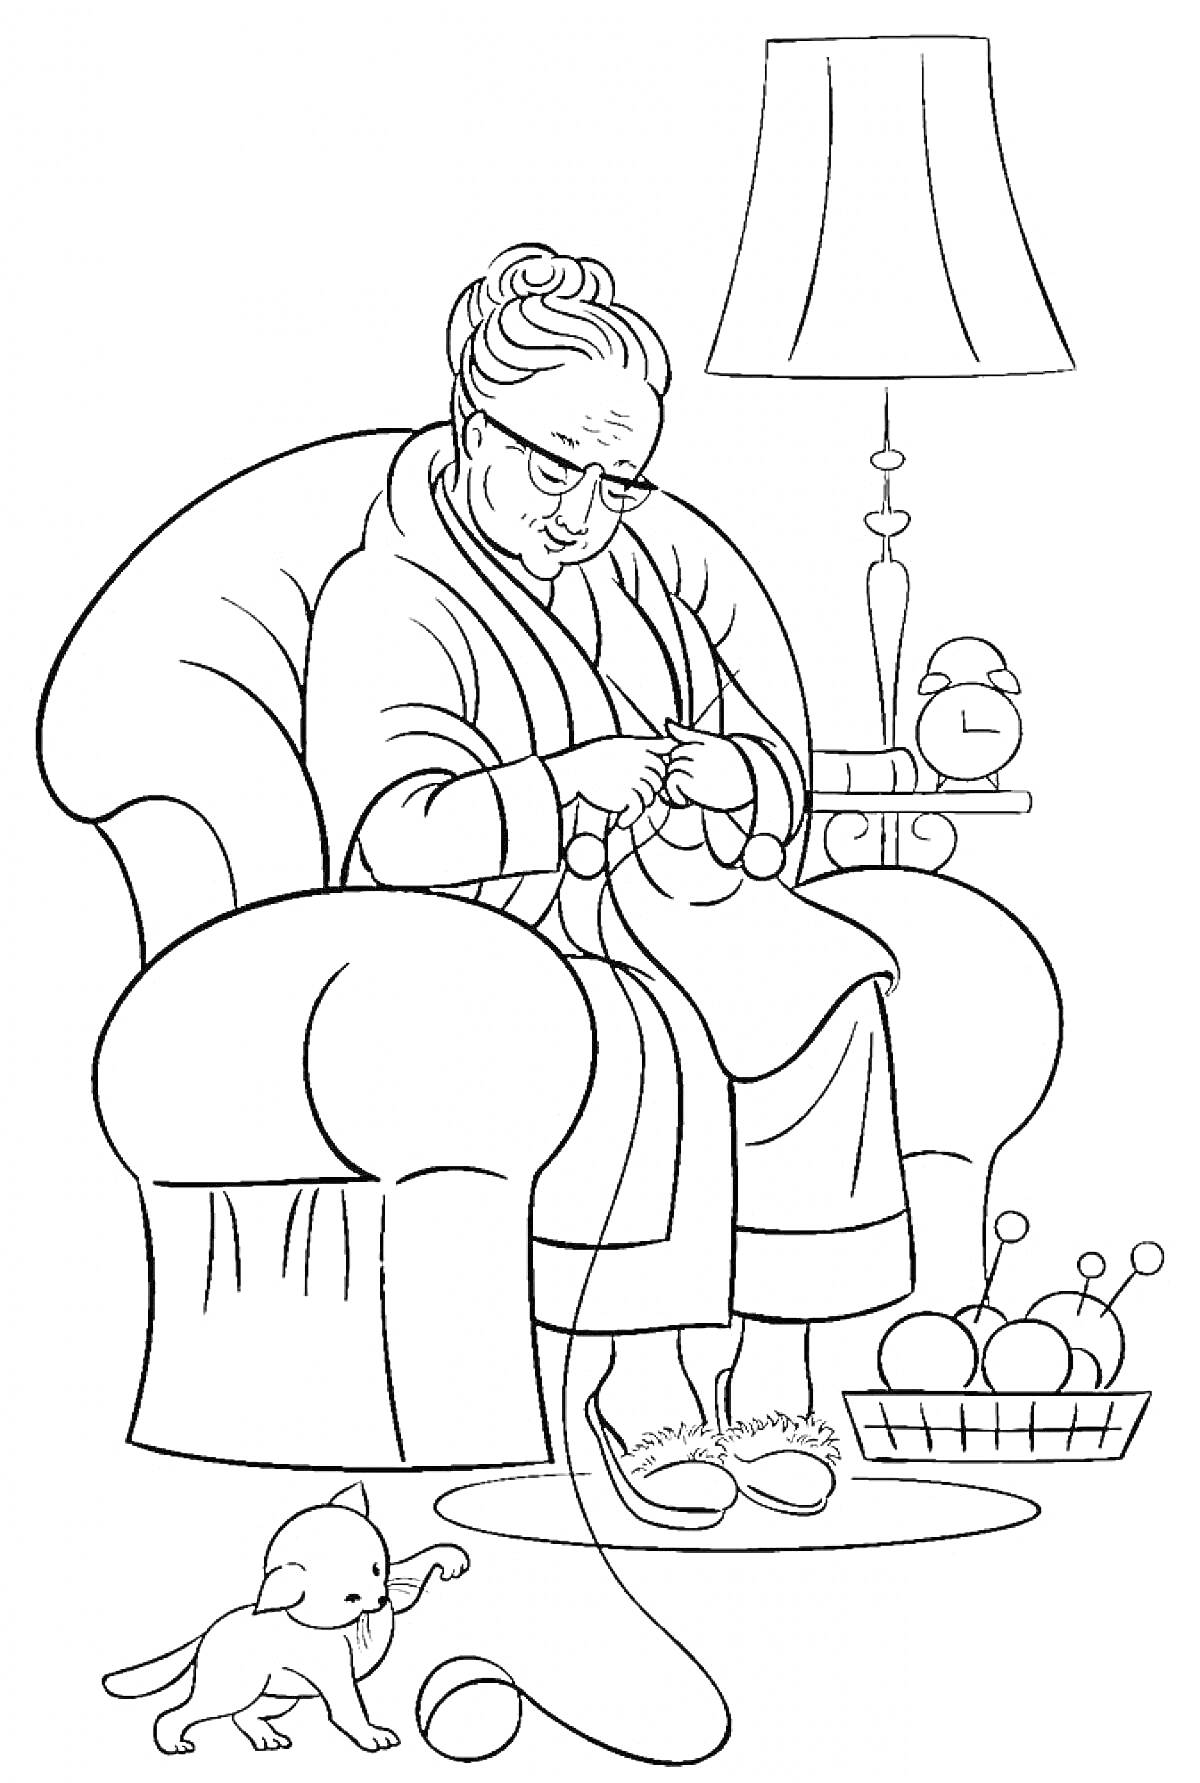 Бабушка в кресле с вязанием, щенок, пряжа в корзине, лампа на столике